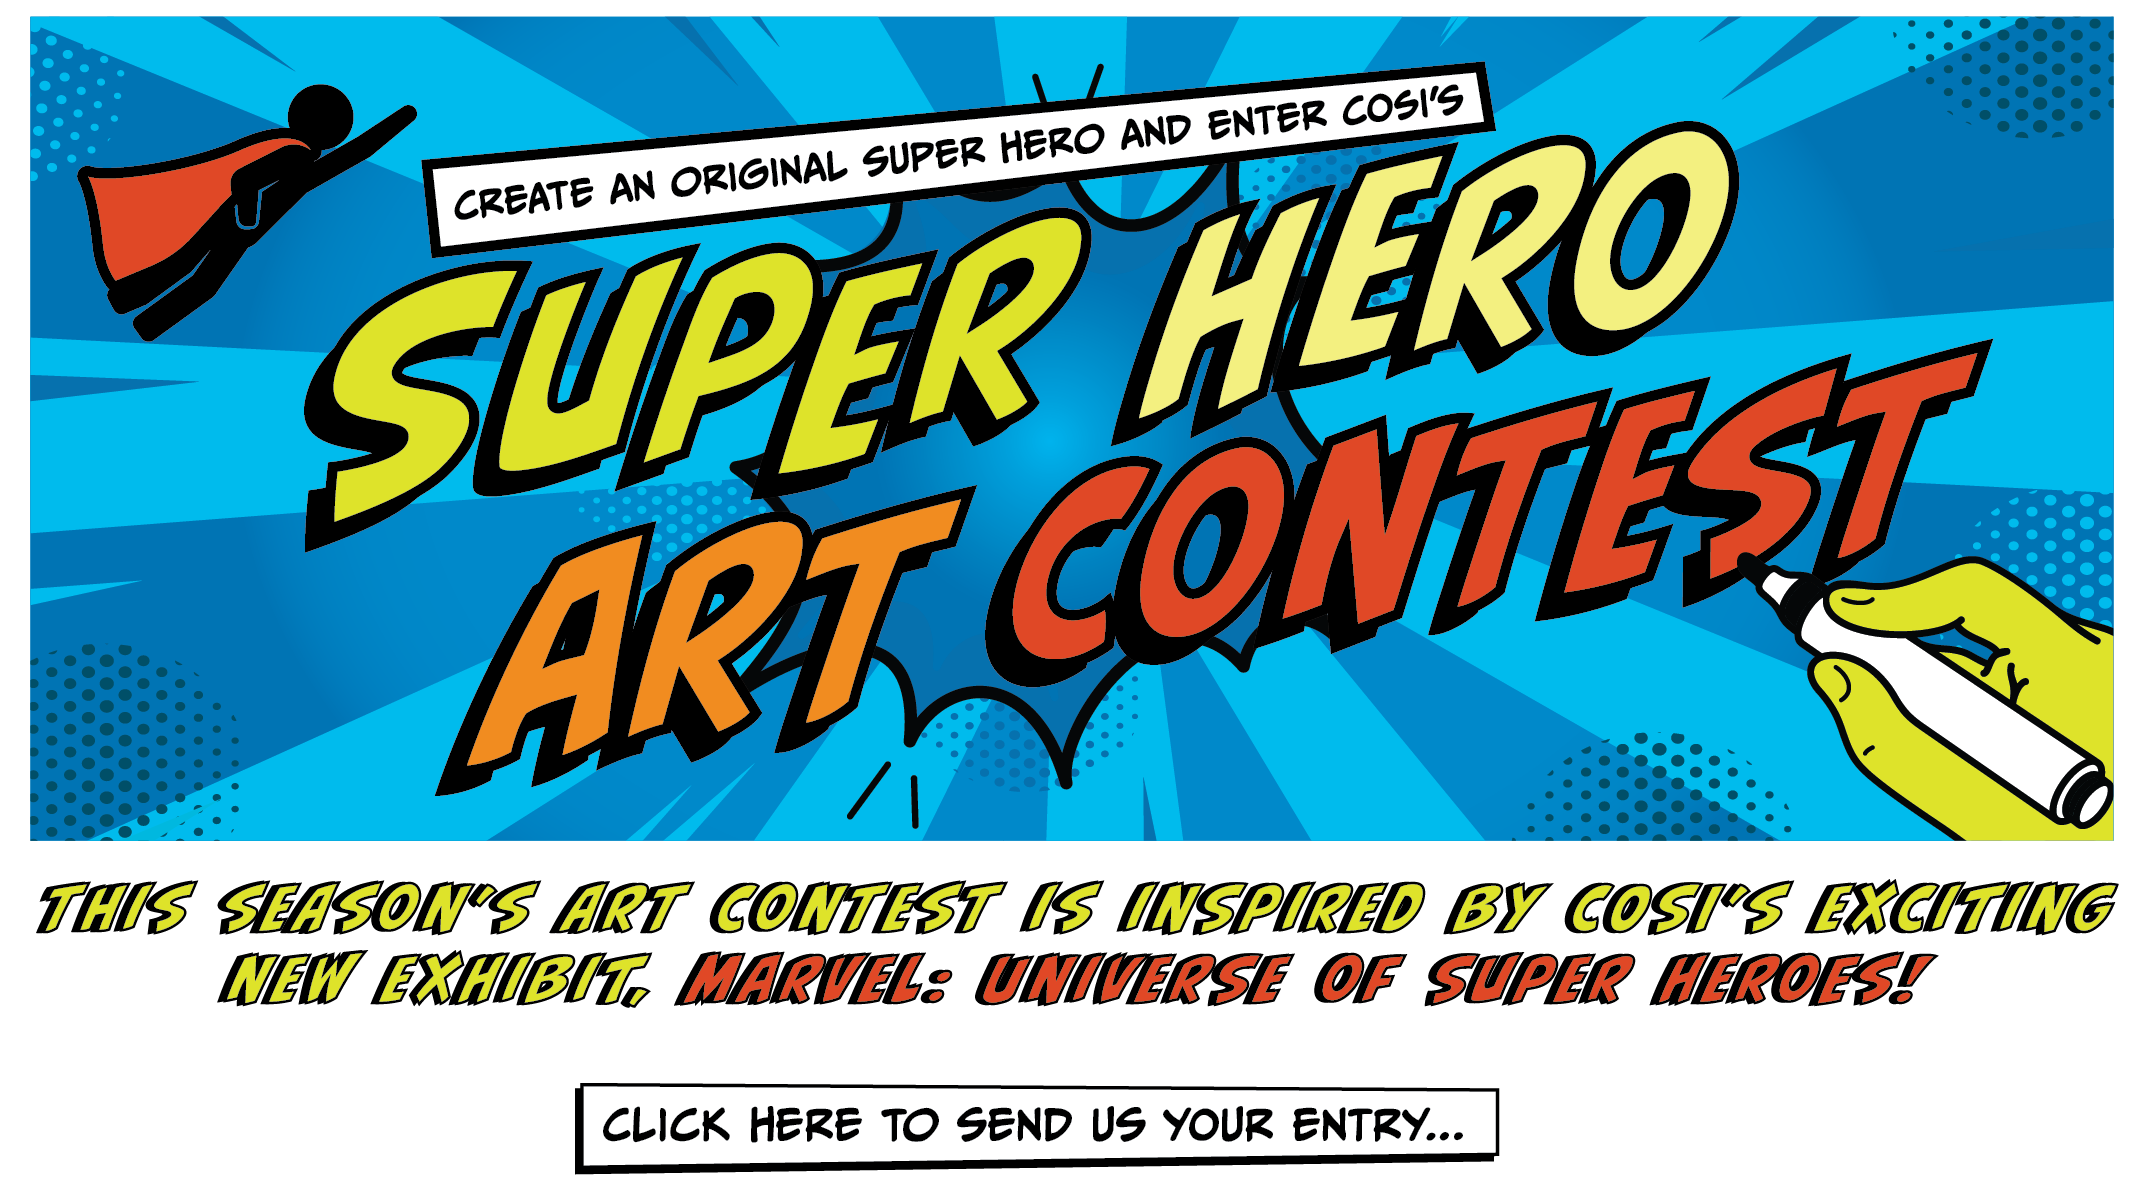 Super Hero Art Contest